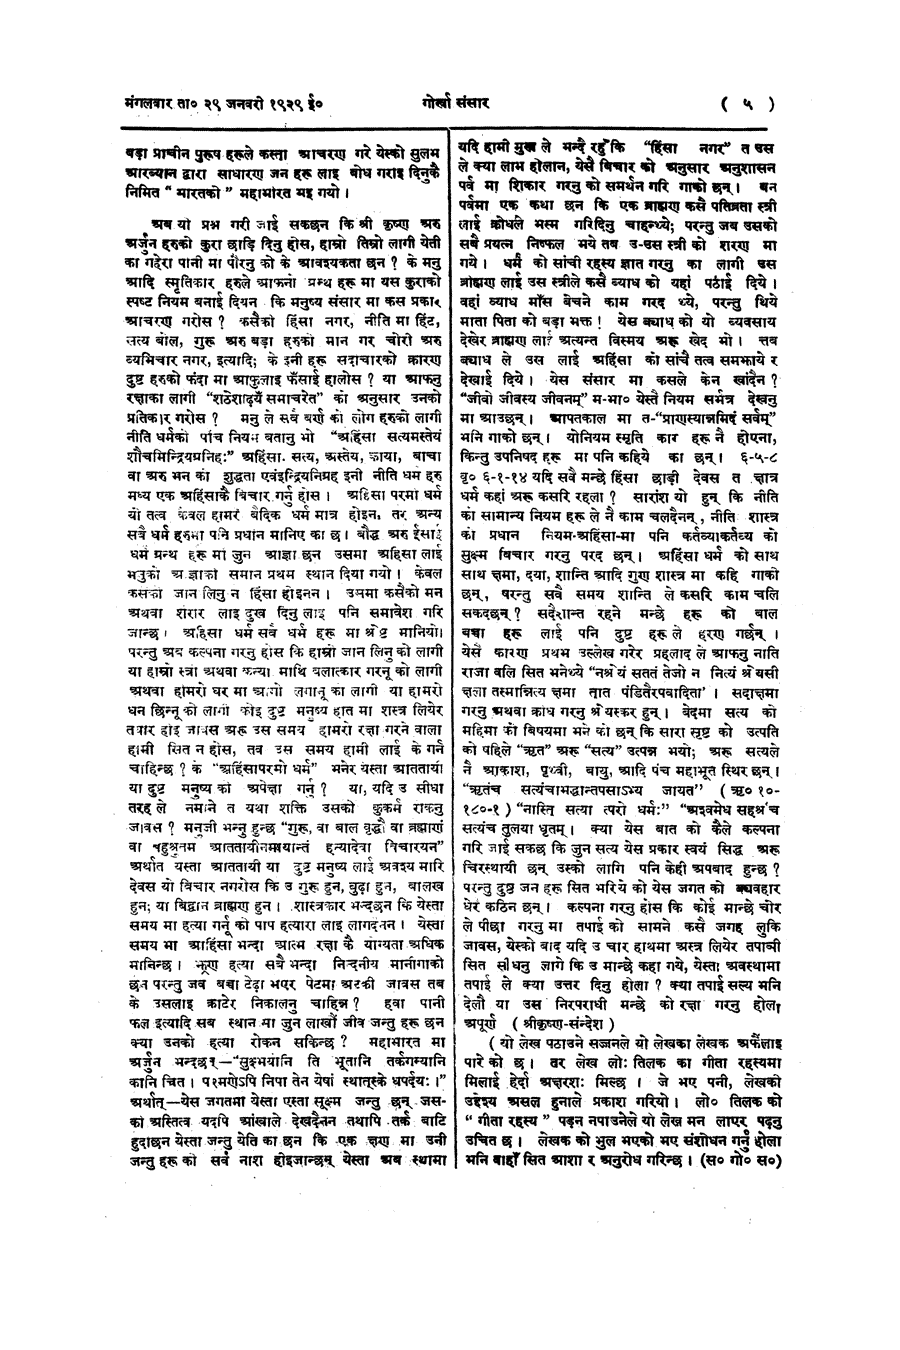 Gorkha Sansar, 29 Jan 1929, page 5